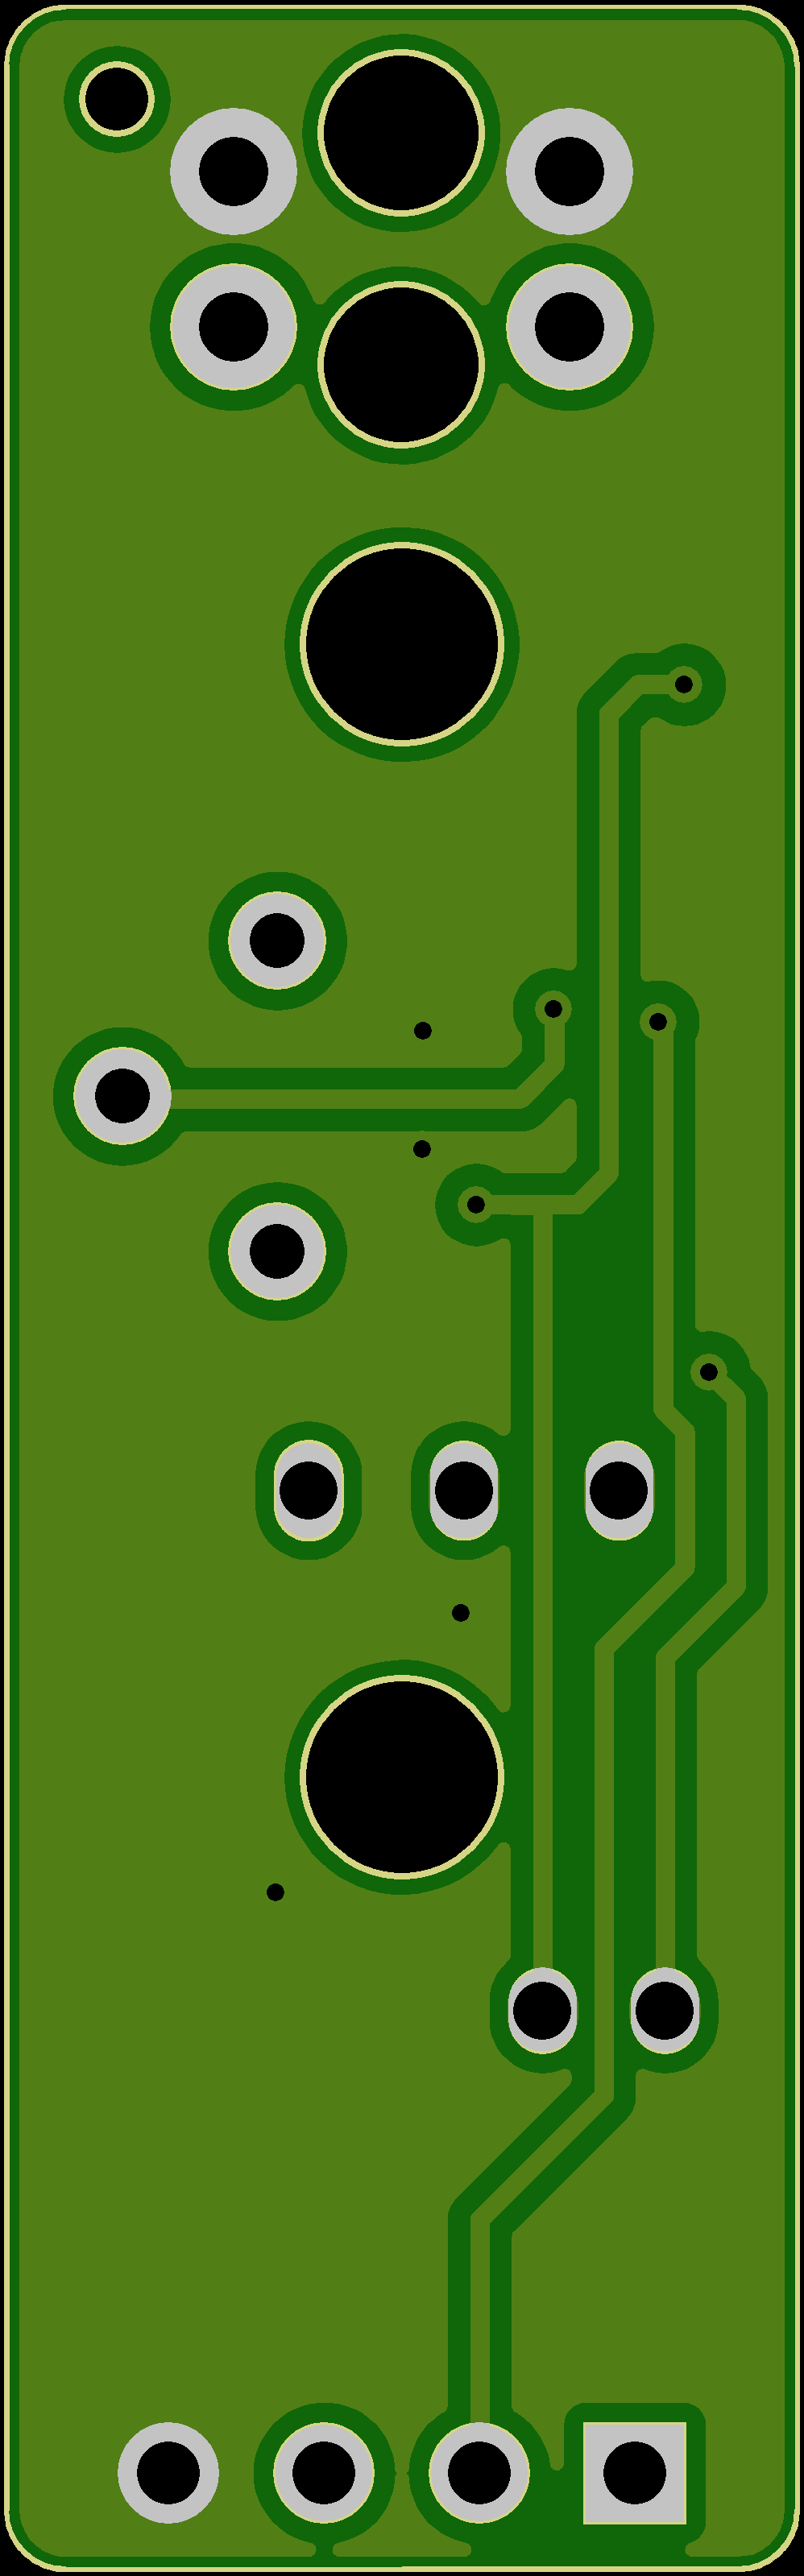 红外触发+延时保持的传感器PCB设计原理图2